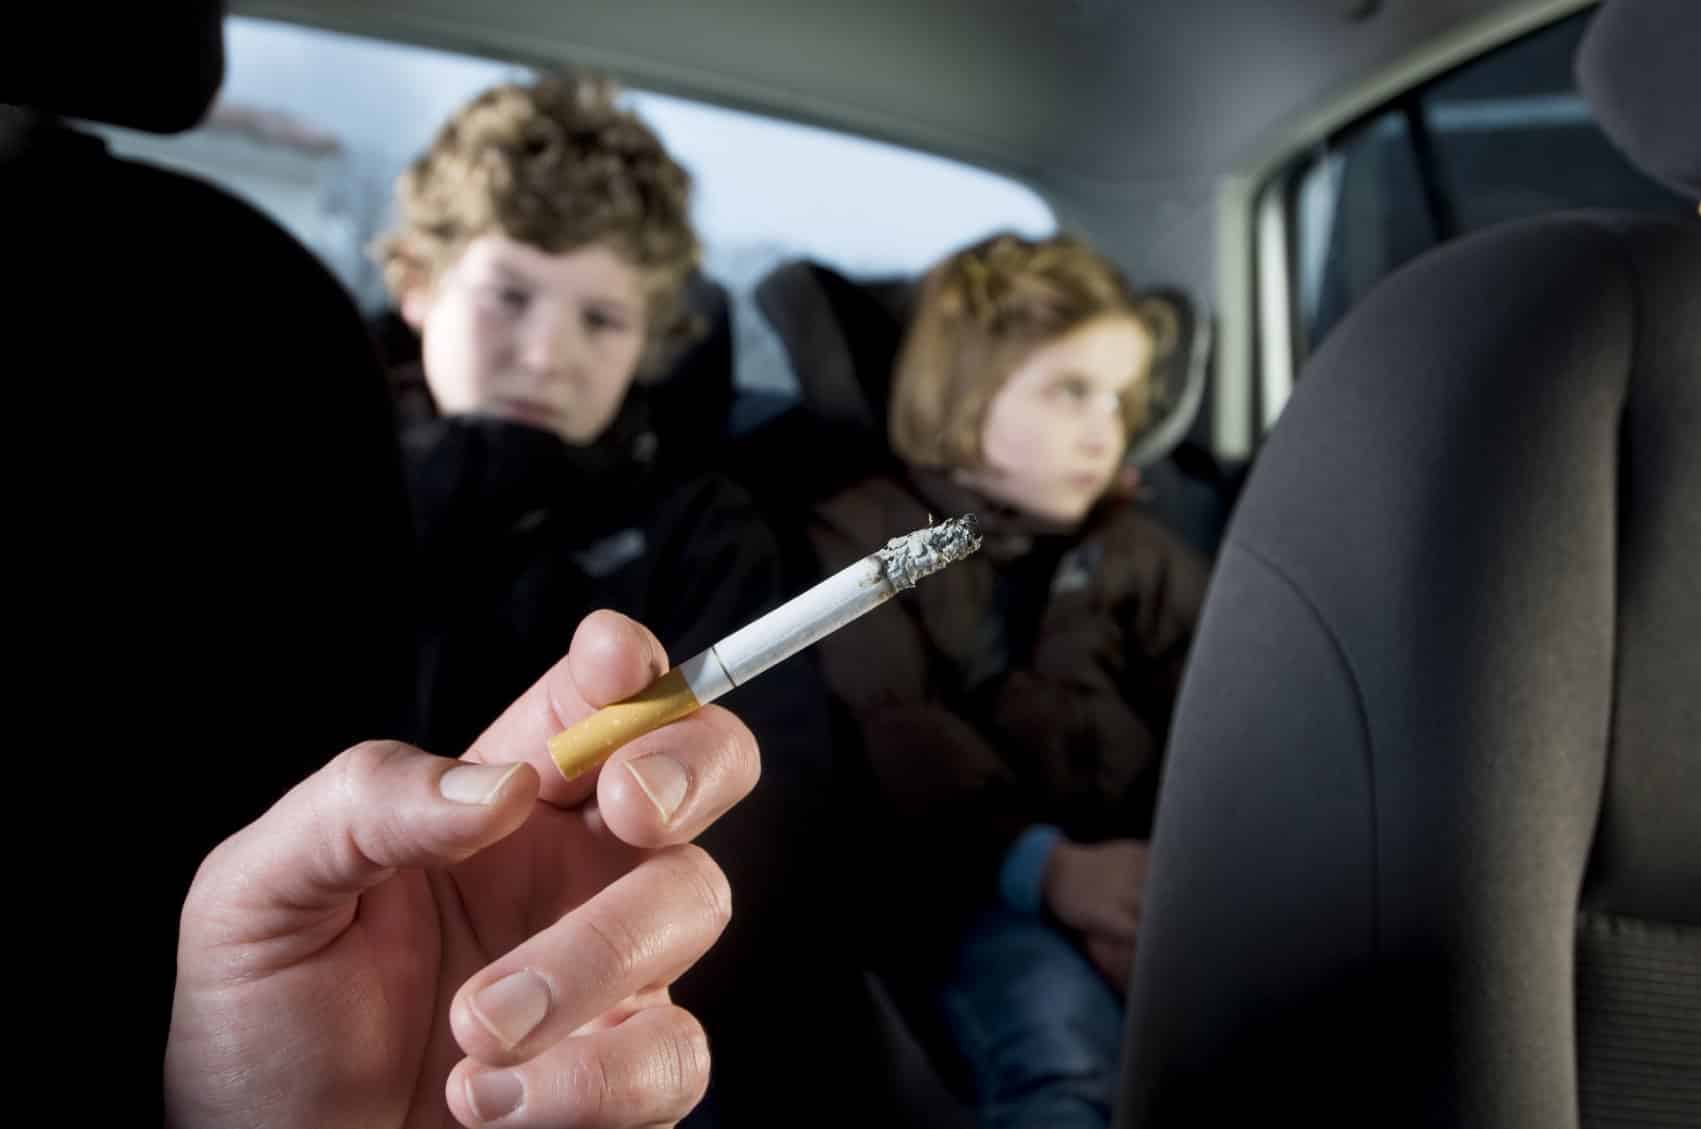 Fumas en el coche con niños dentro